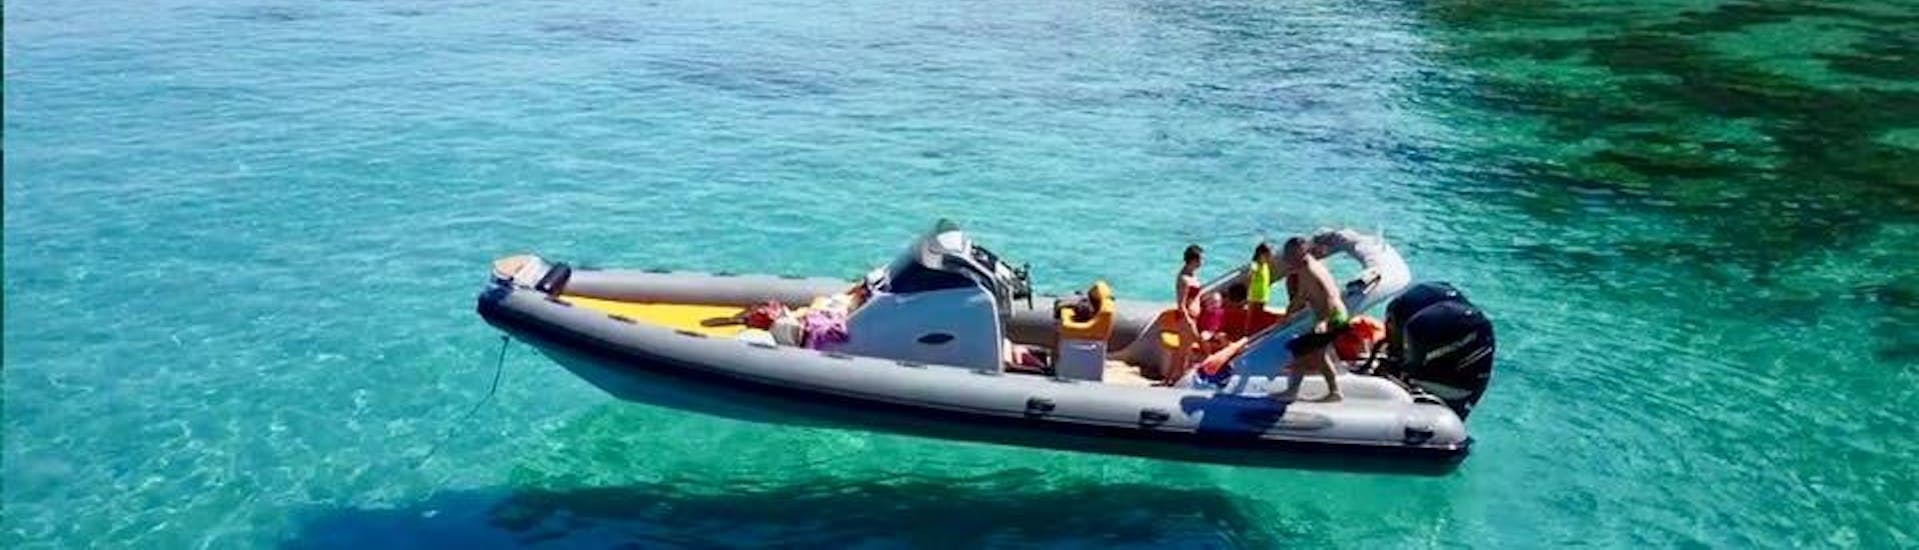 Mit einem Boot von Sea Sports Tropea geht es bei einer privaten Bootstour nach Capo Vaticano an der Costa degli Dei durch das türkisfarbene Wasser der kalabrischen Küste.